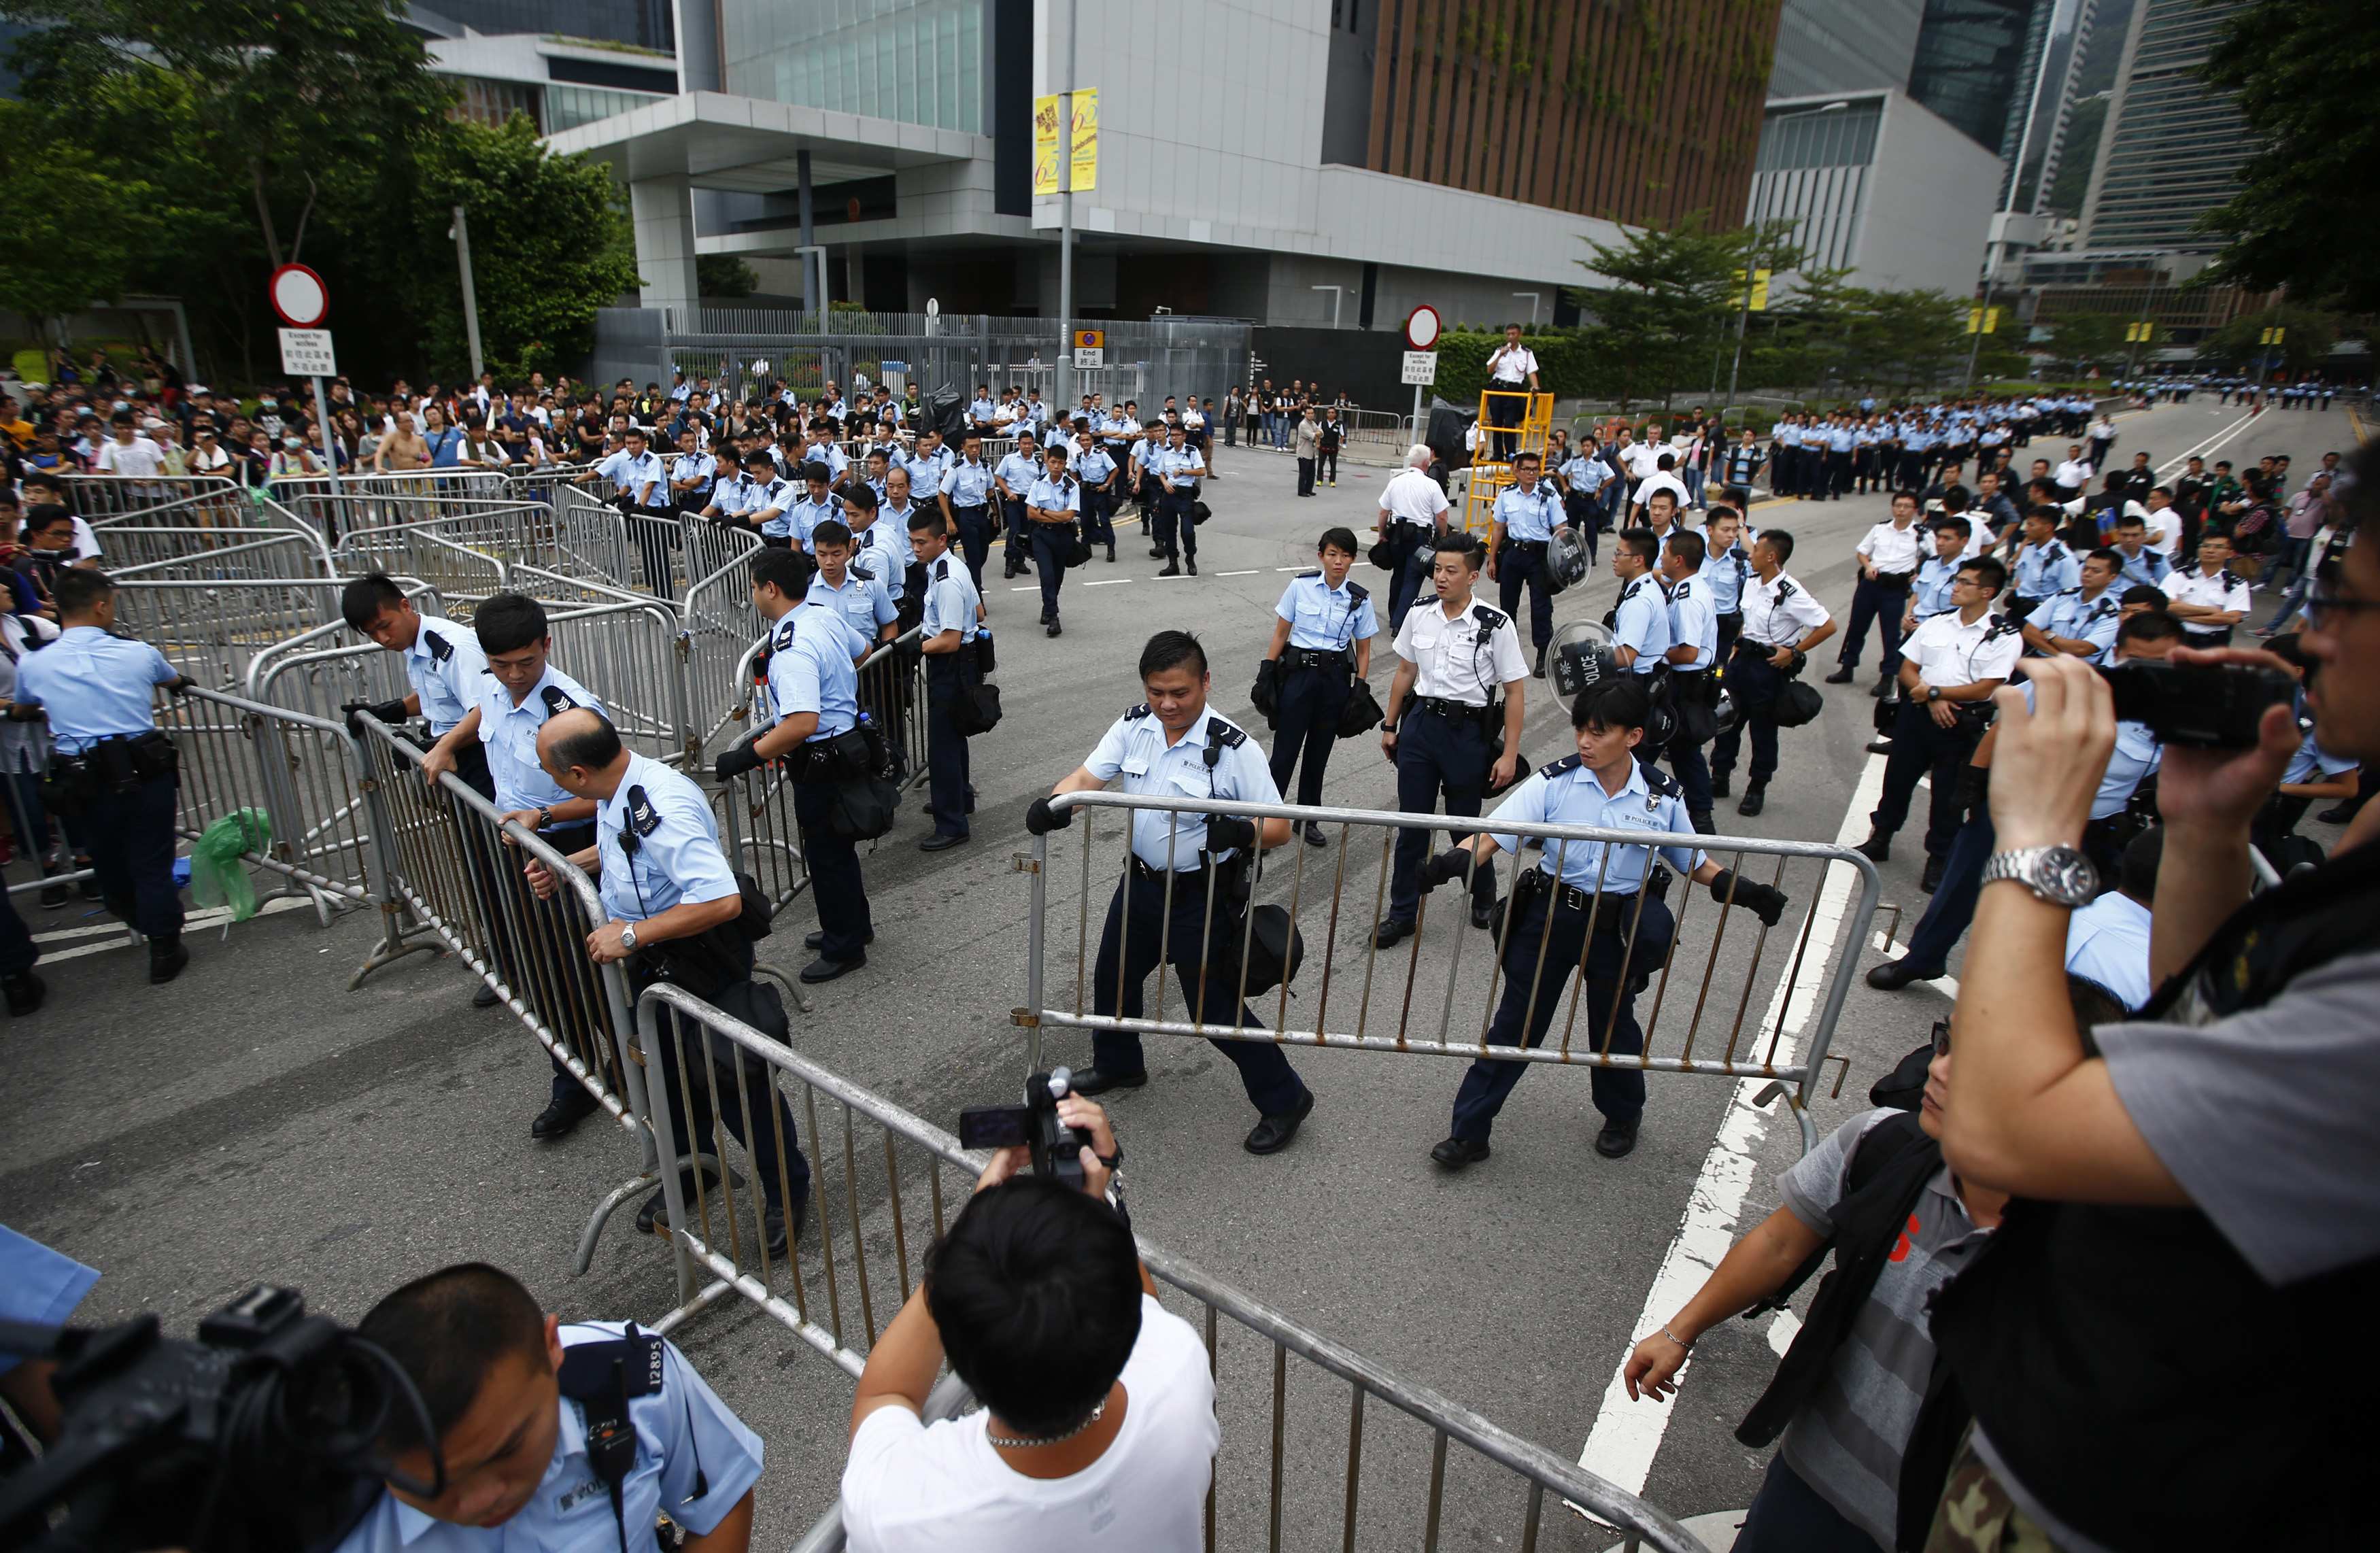 El gobierno de Hong Kong pide a los manifestantes que se dispersen pacíficamente